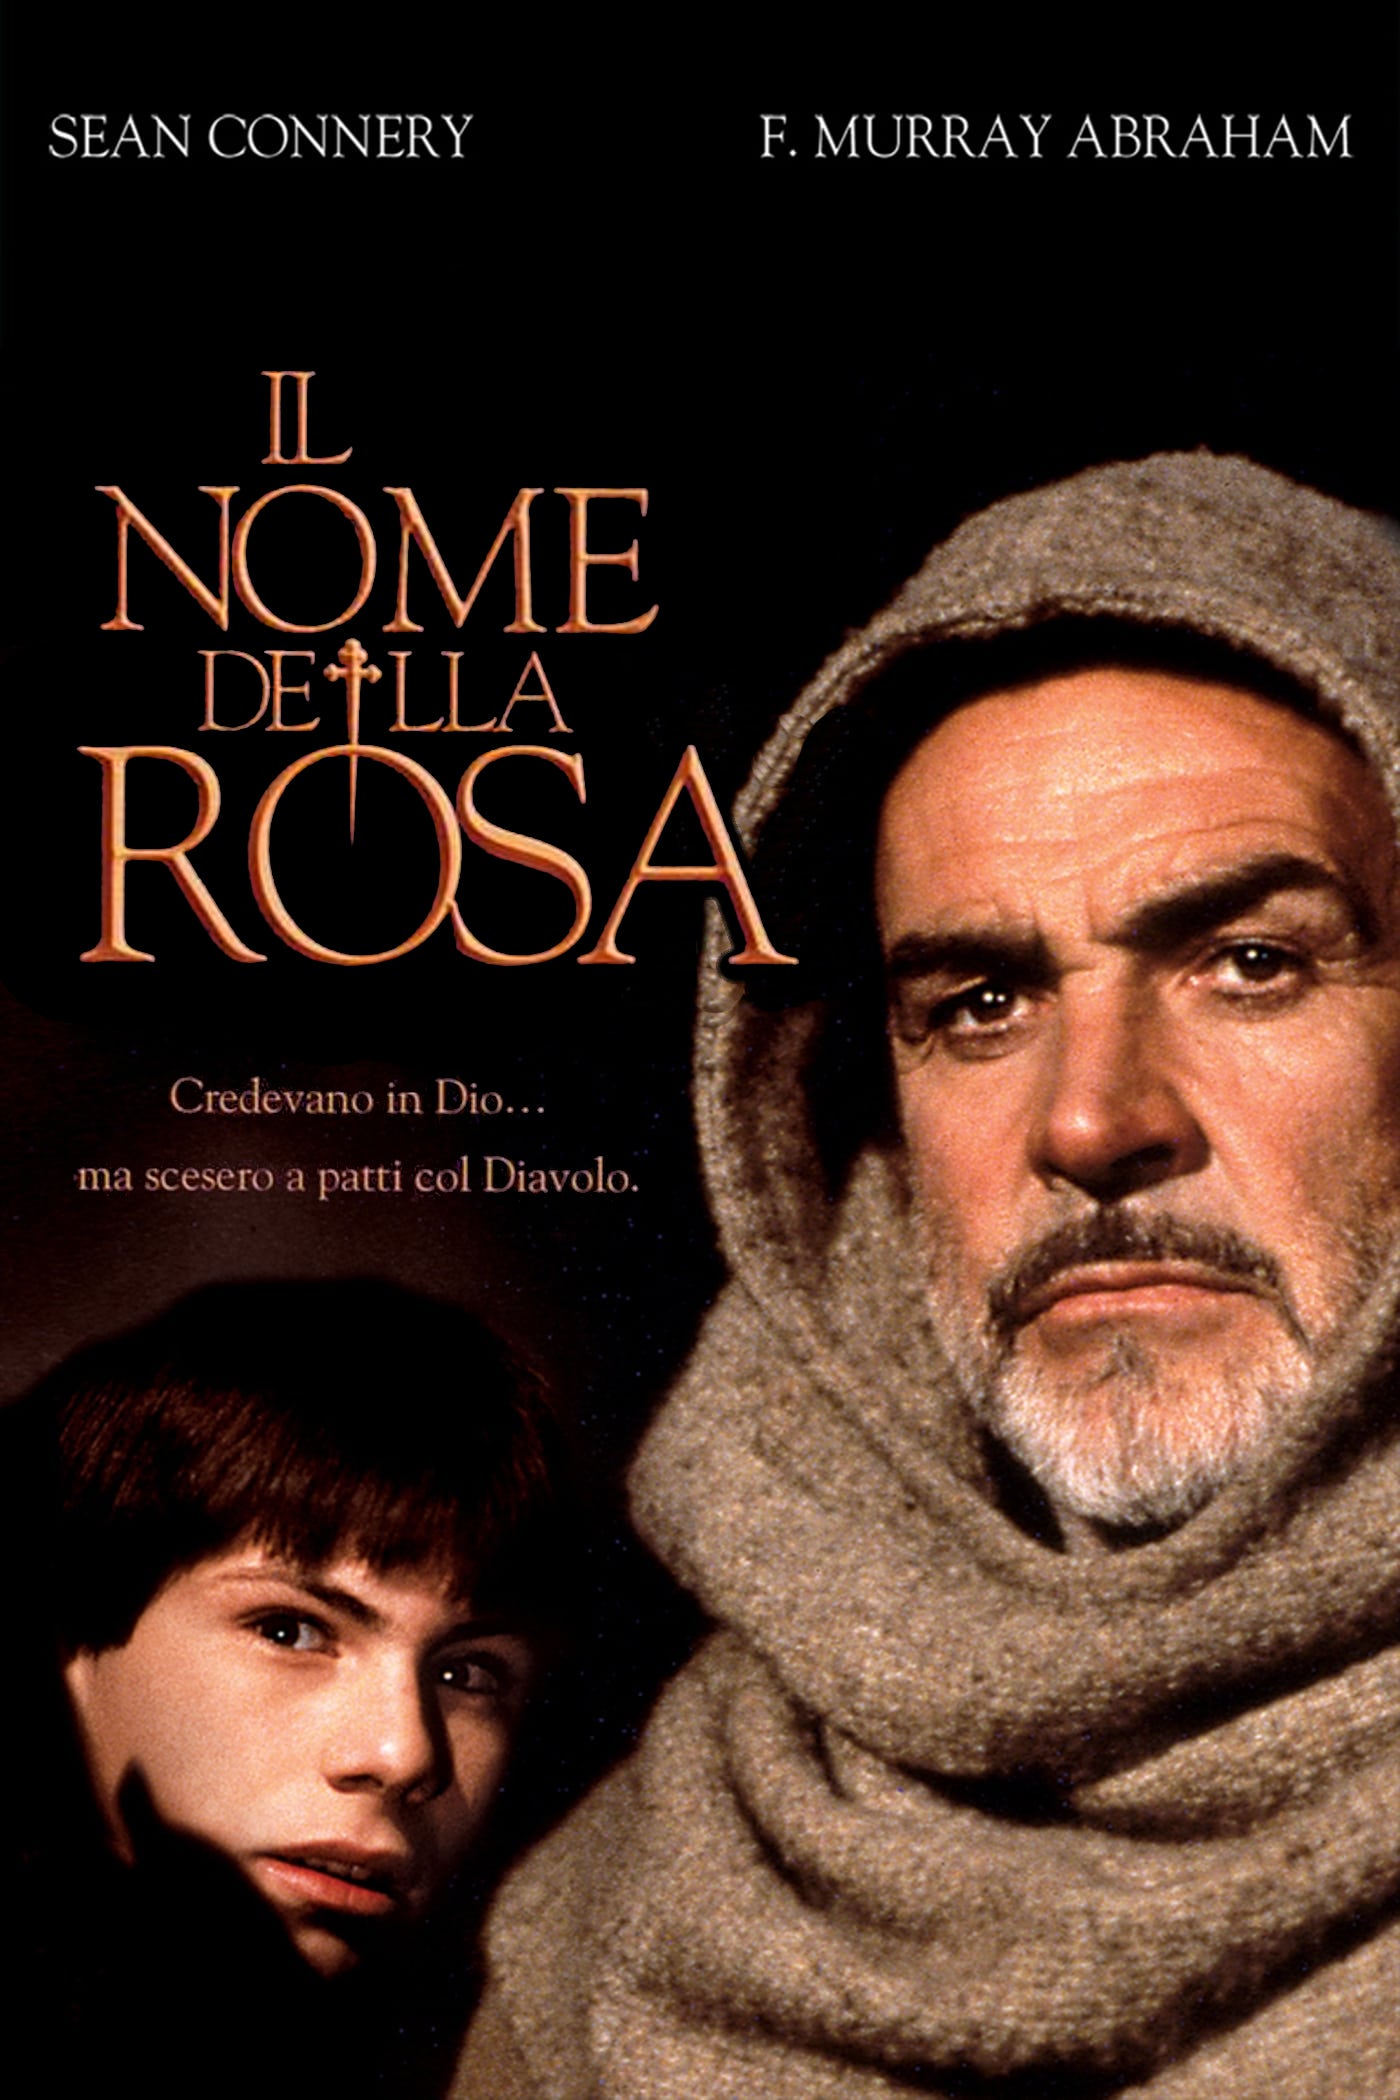 Il nome della rosa [HD] (1986)